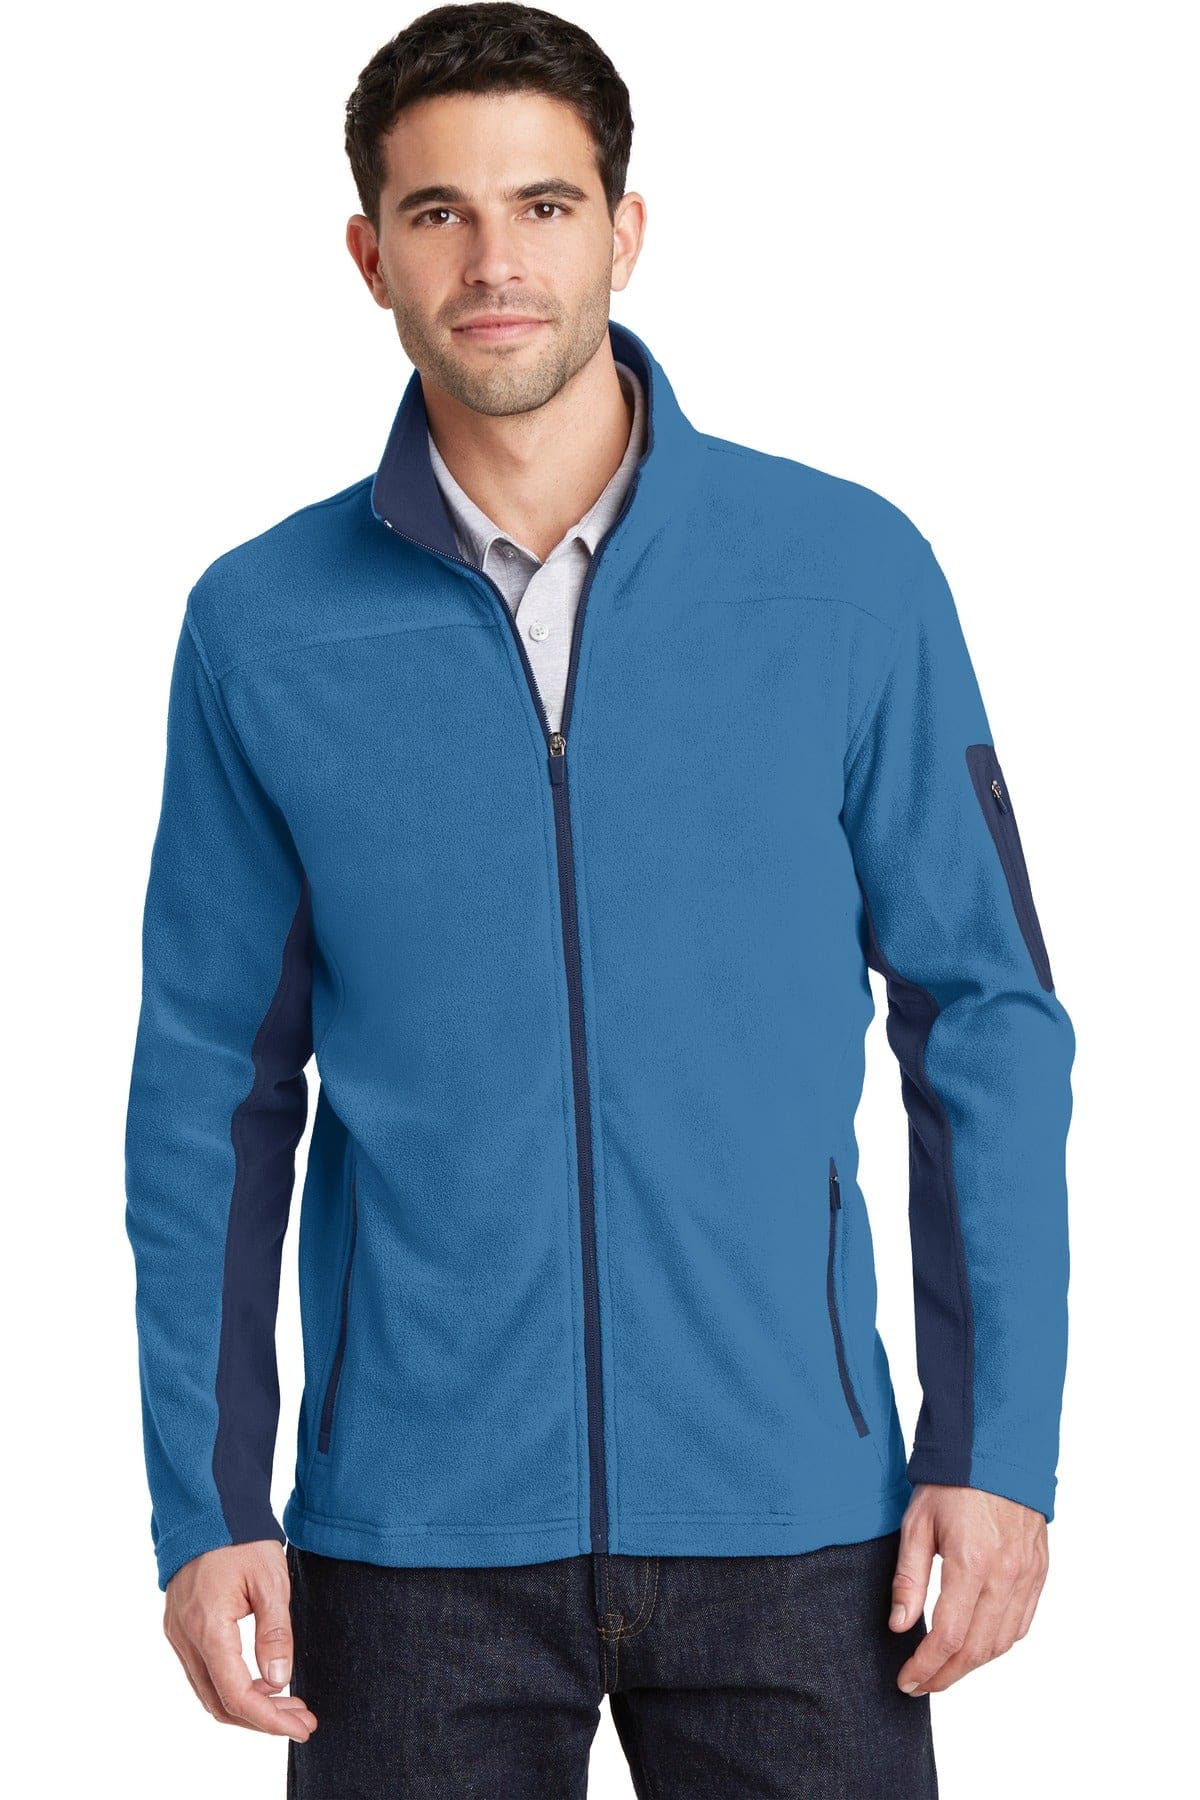 Port Authority Summit Fleece Full - zip Jacket. F233 - Activewear Outerwear